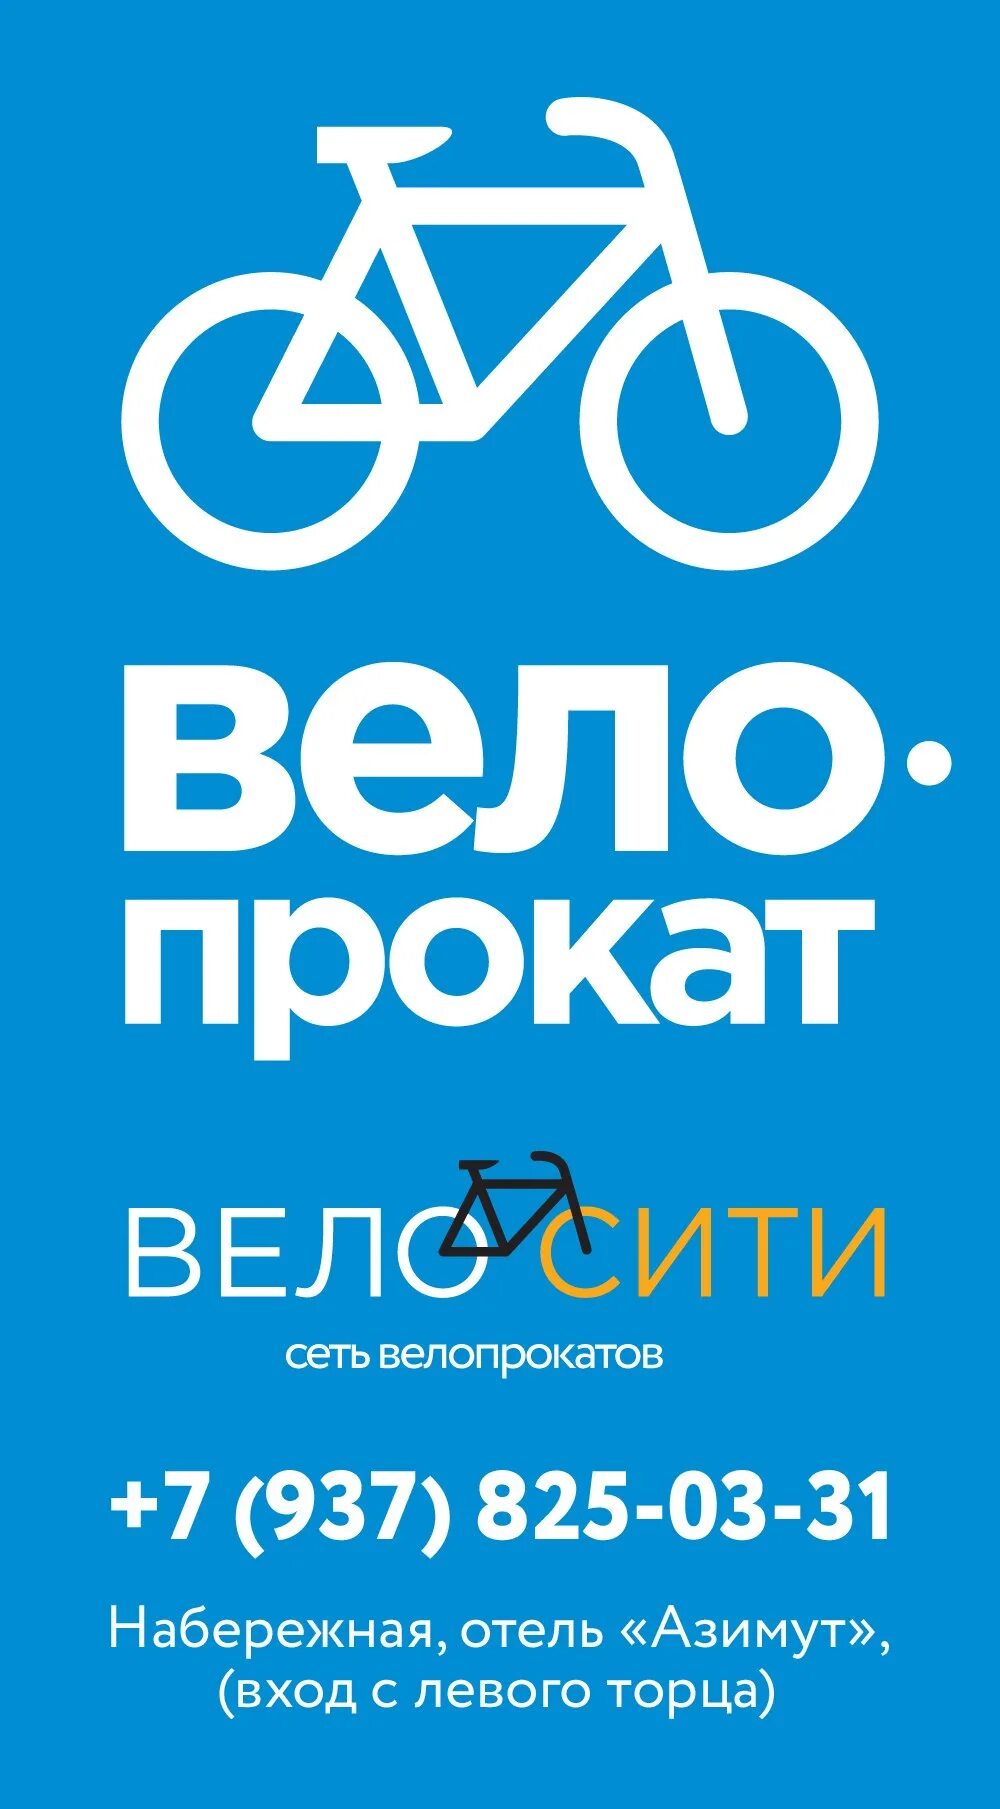 Велопрокат реклама. Прокат велосипедов реклама. Баннер велопрокат. Реклама велопроката. Реклама проката